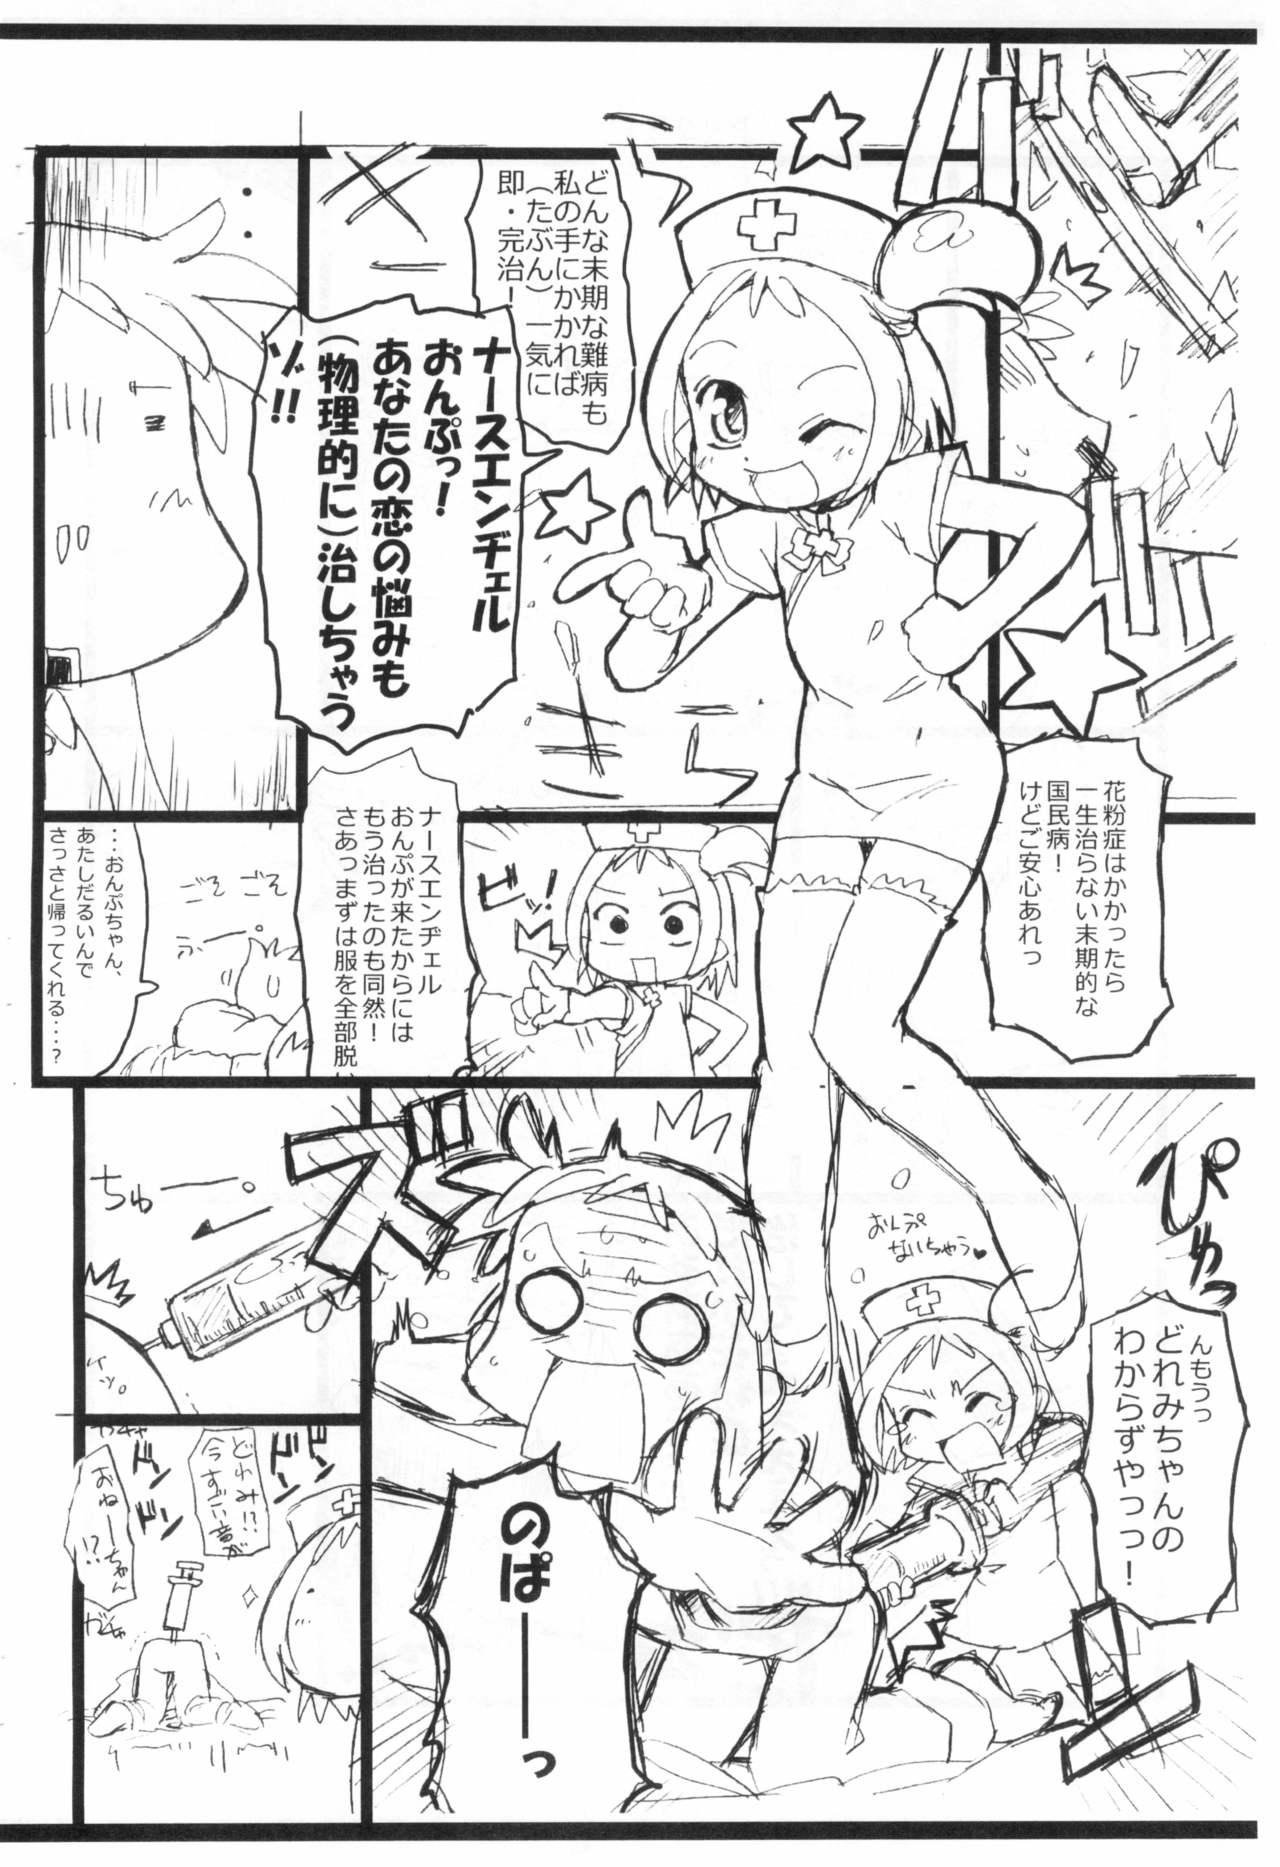 Nuru Kafun to Kiseichuu to Majo Minarai. - Ojamajo doremi | magical doremi Hooker - Page 8